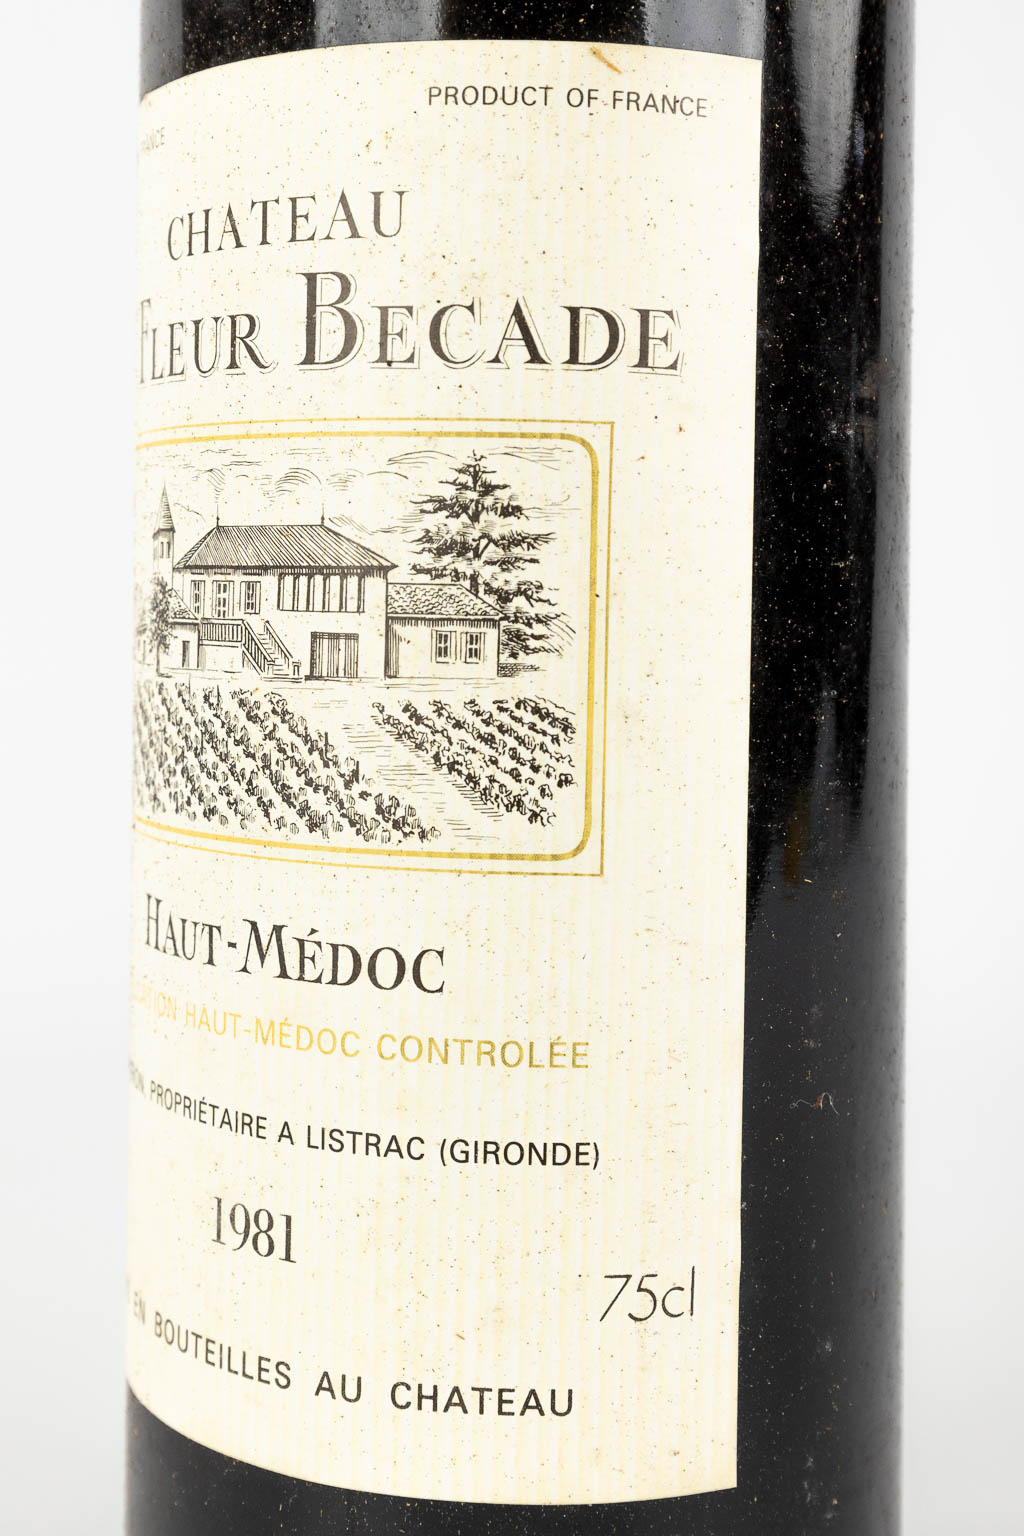 Château La Fleur Becade, 1976, 5 bottles 1981, 1 bottle.